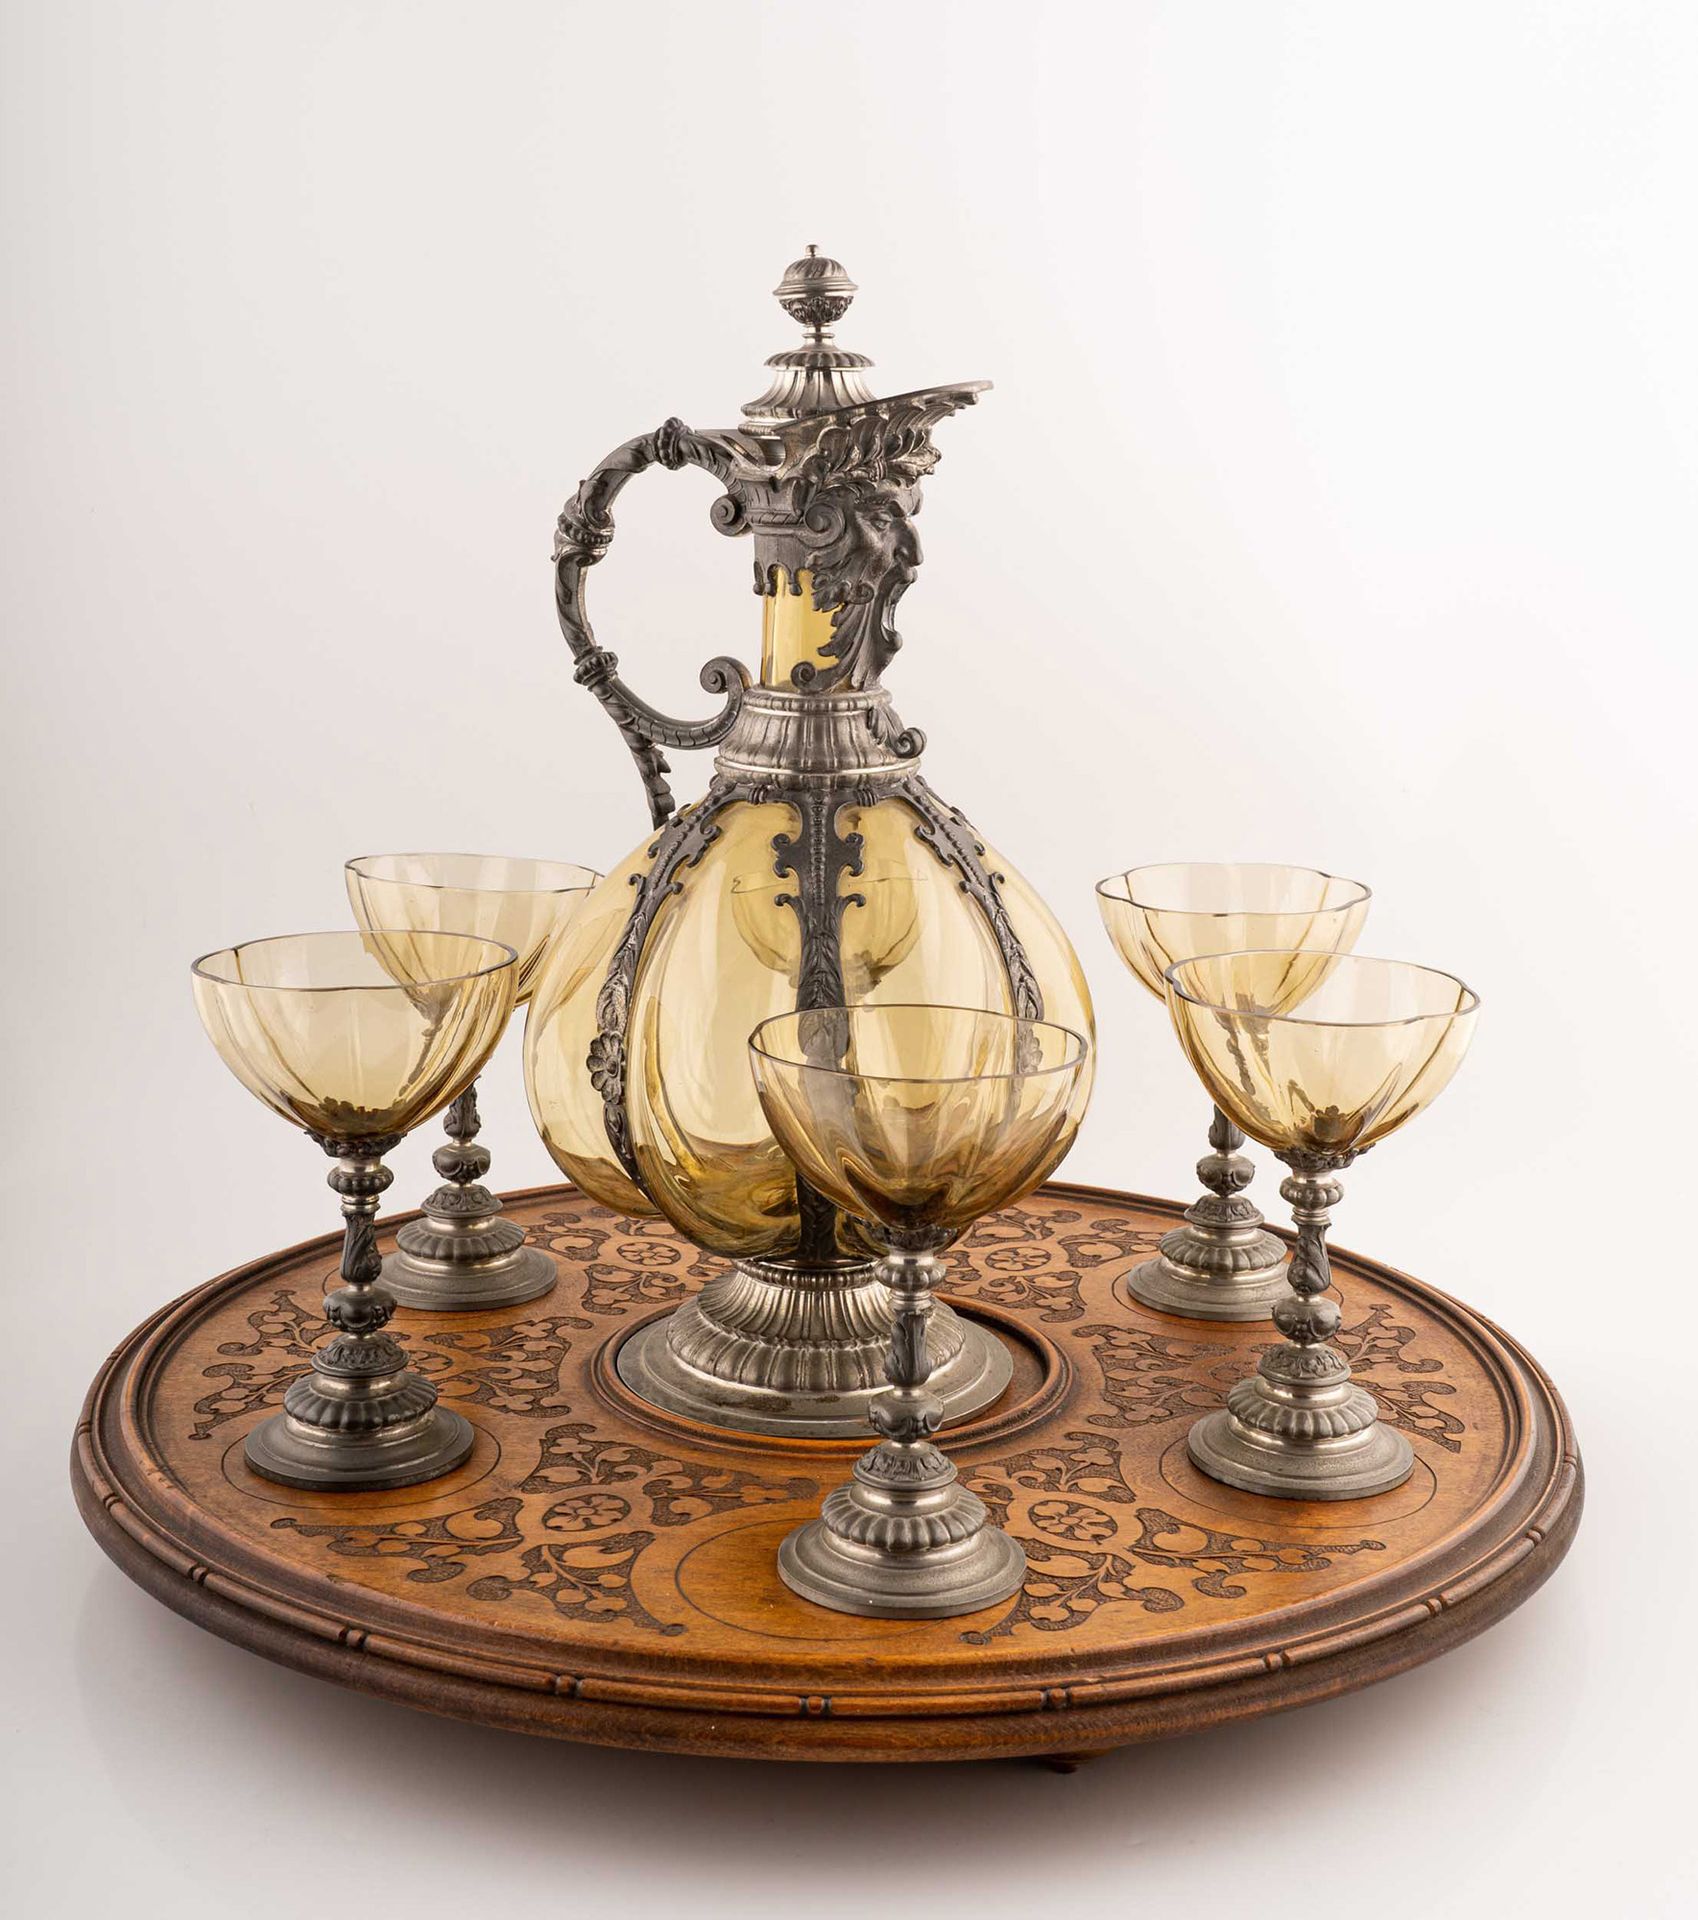 Null 套装包括玻璃托盘、咖啡壶和6个杯子

19世纪末

眼镜的直径为9厘米